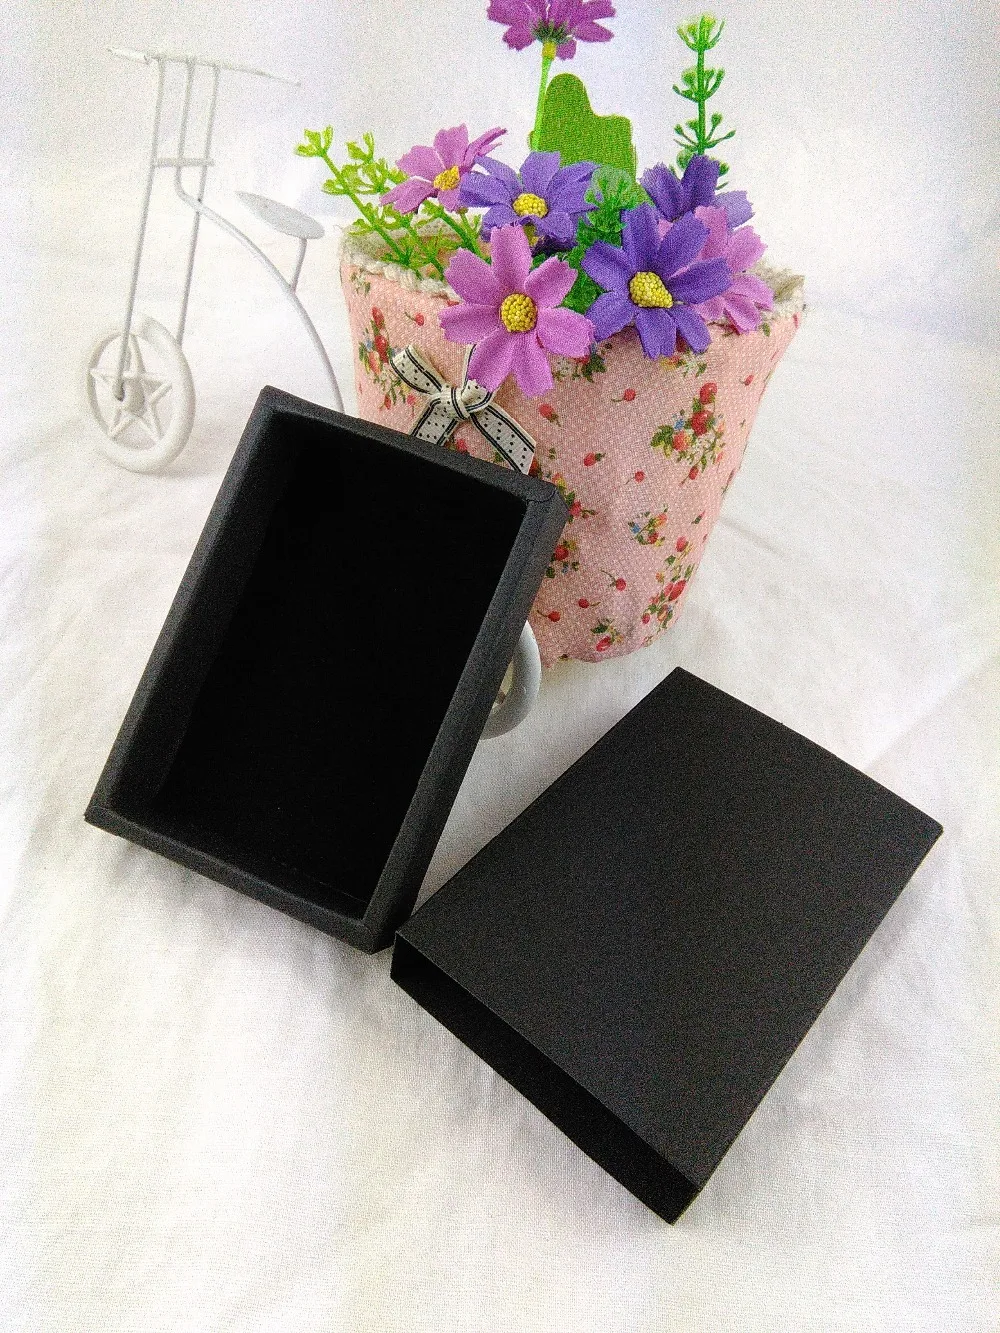 24 шт./лот, Подарочная коробка, розничная, черный цвет, бумажная коробка для ящиков, подарочная упаковка, картонные коробки с бесплатным высококачественным черным бархатом